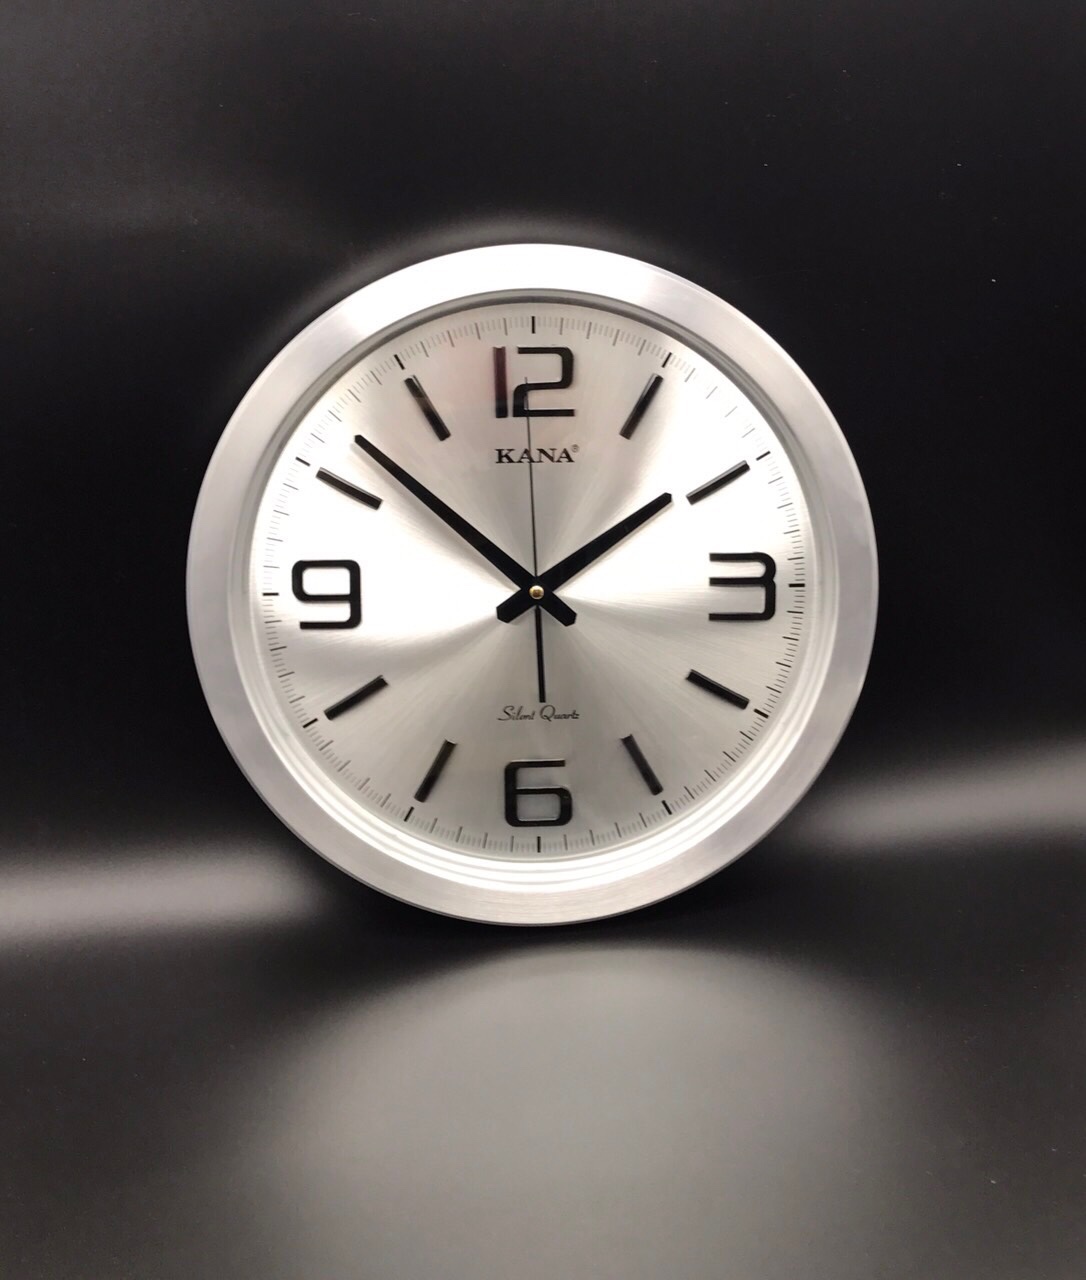 Đồng hồ treo tường vỏ nhôm cao cấp KN-45W (38cm)